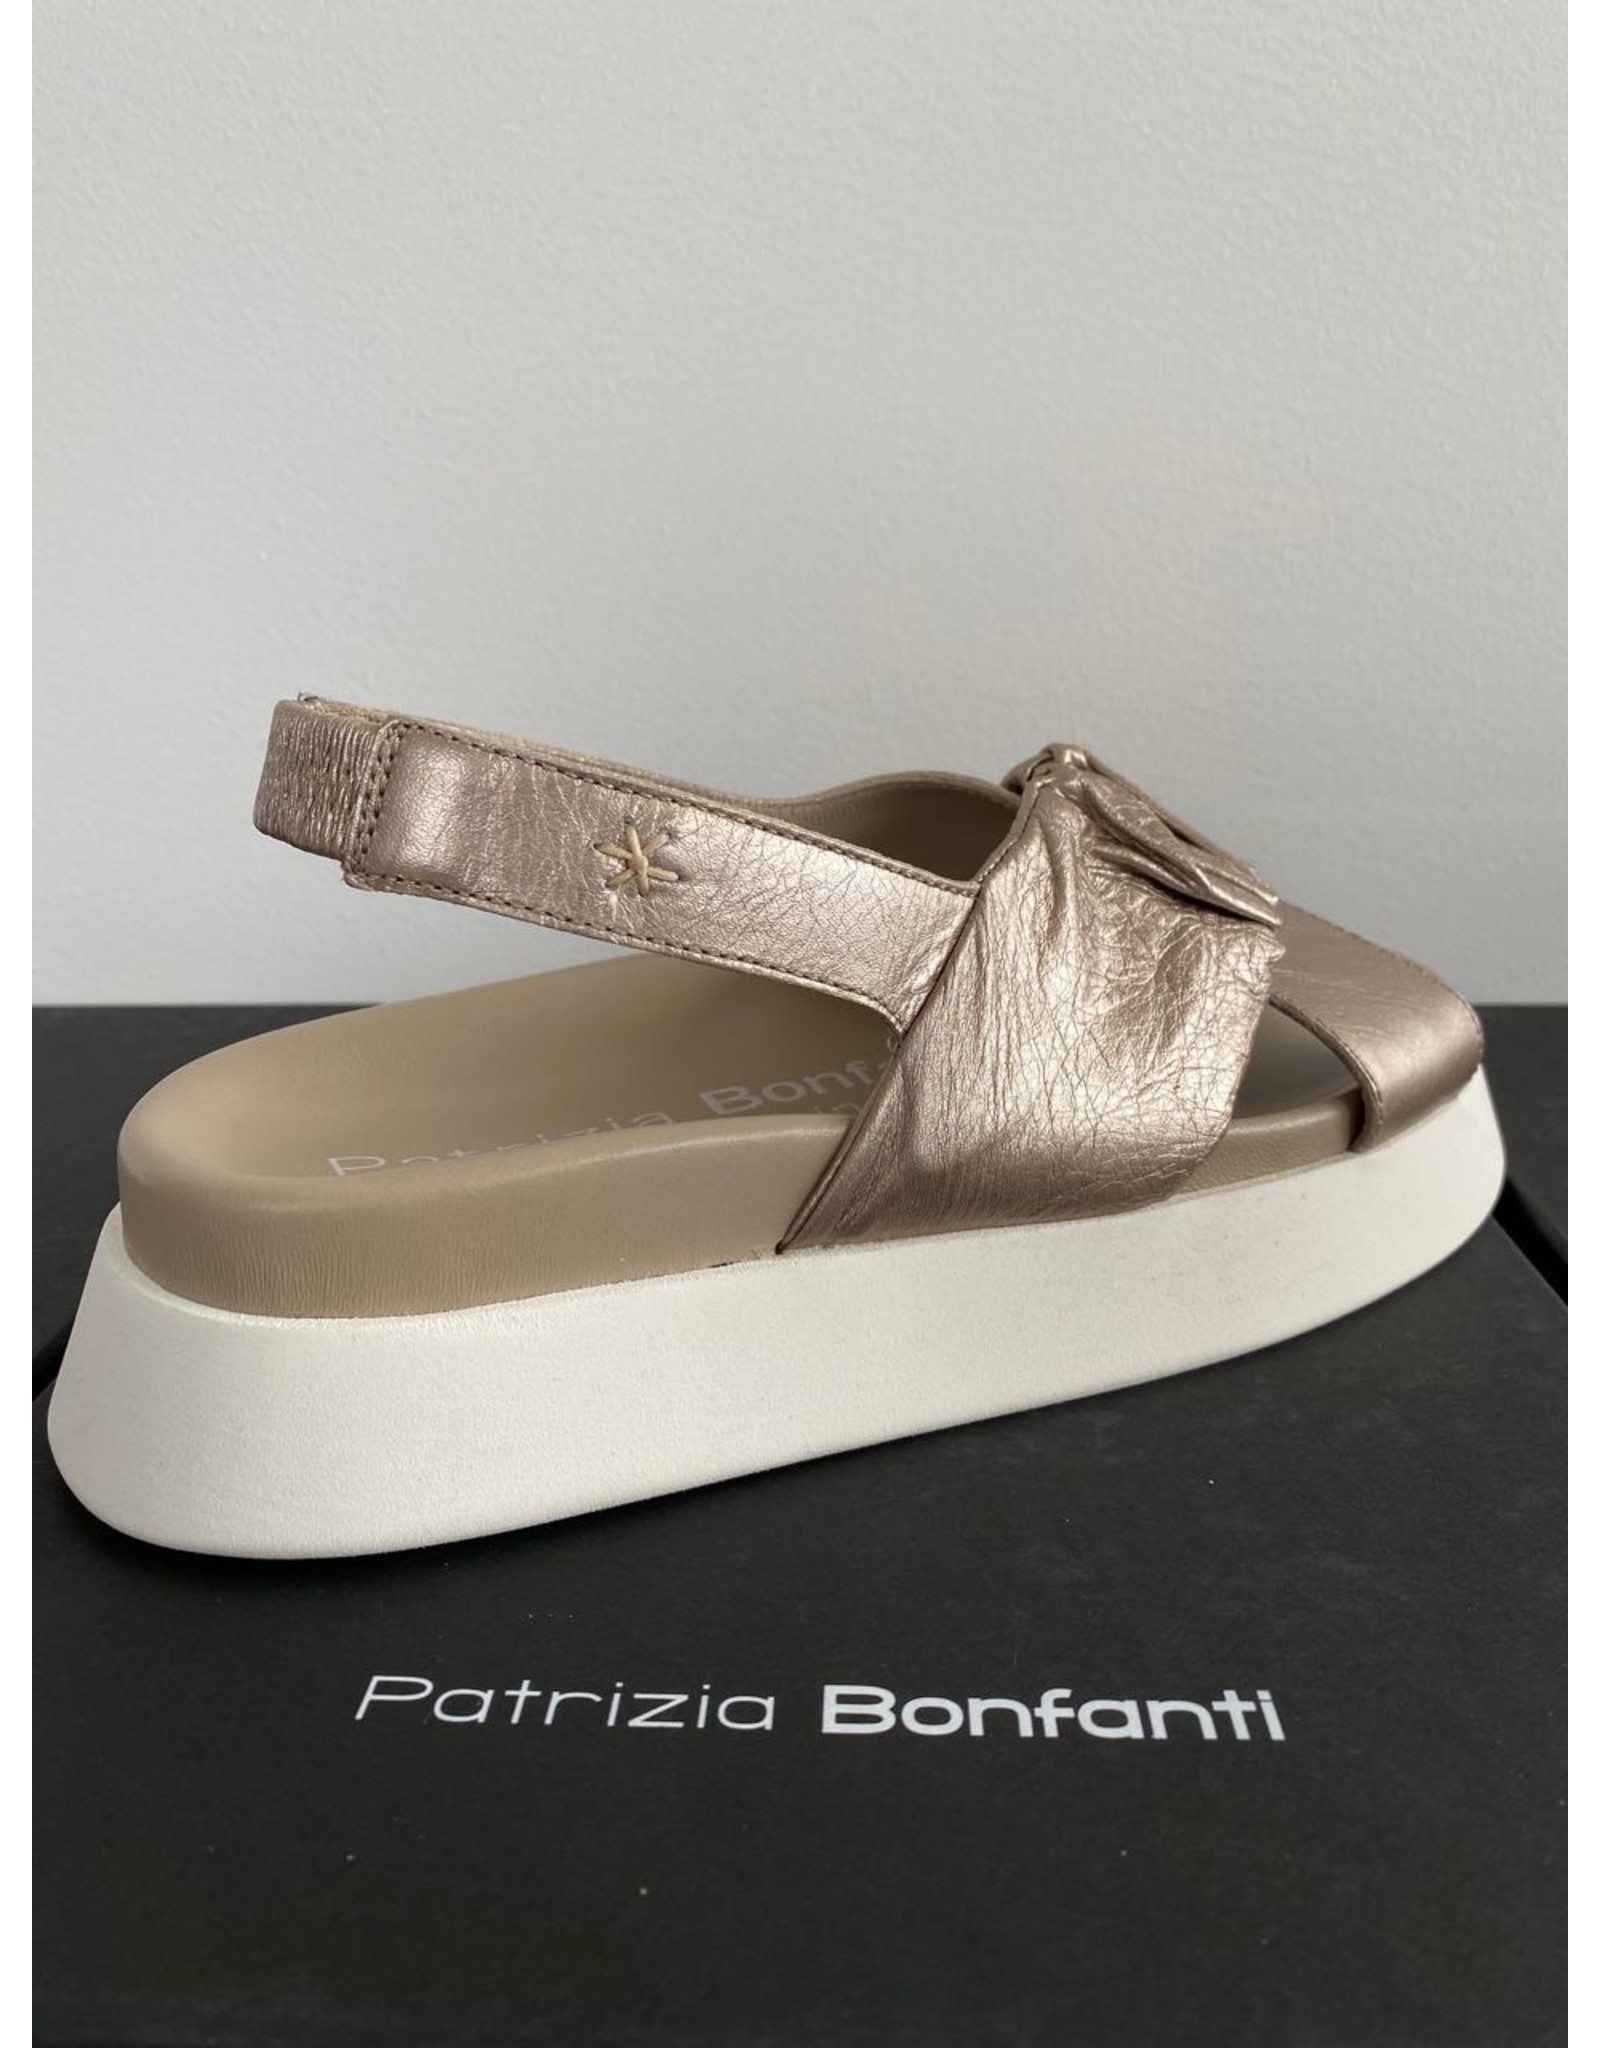 Patrizia Bonfanti Slingback Wedge Sandal